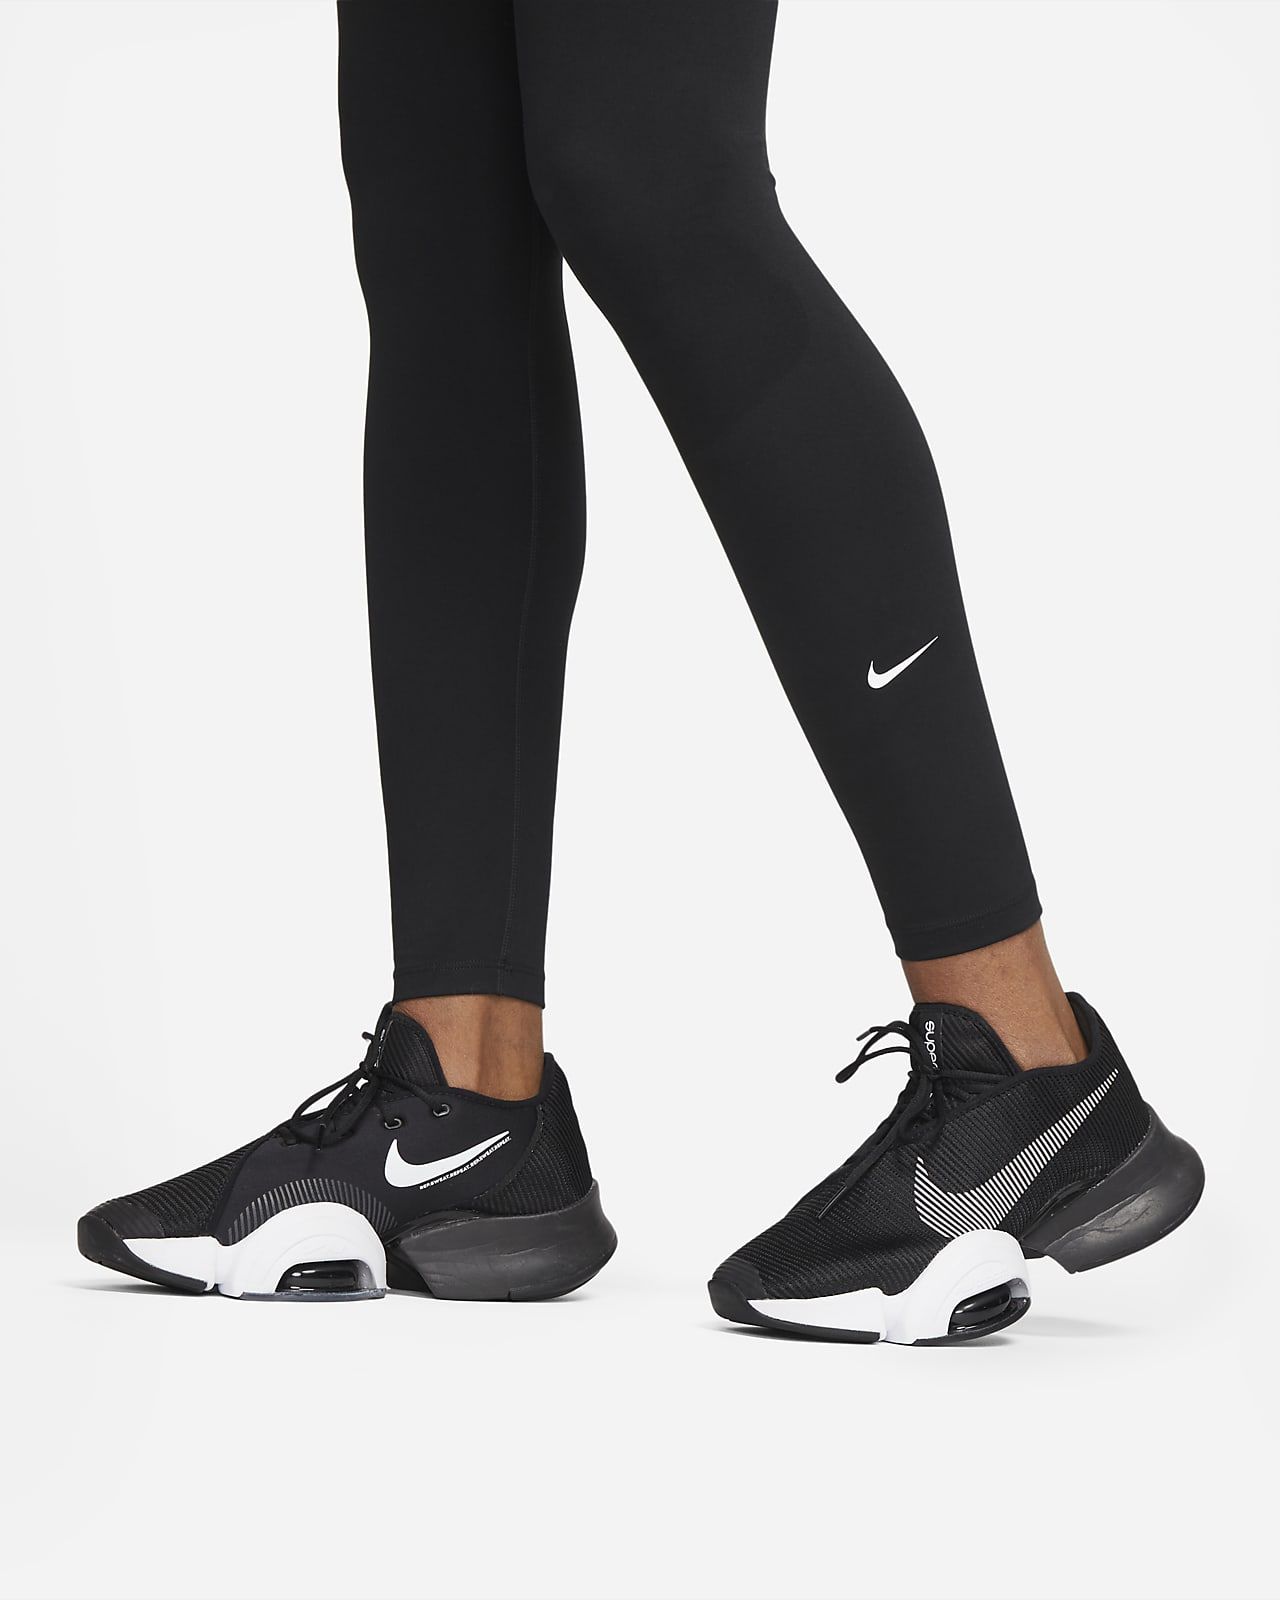 Nike One Women's High-Rise Leggings. Nike.com | Nike (US)